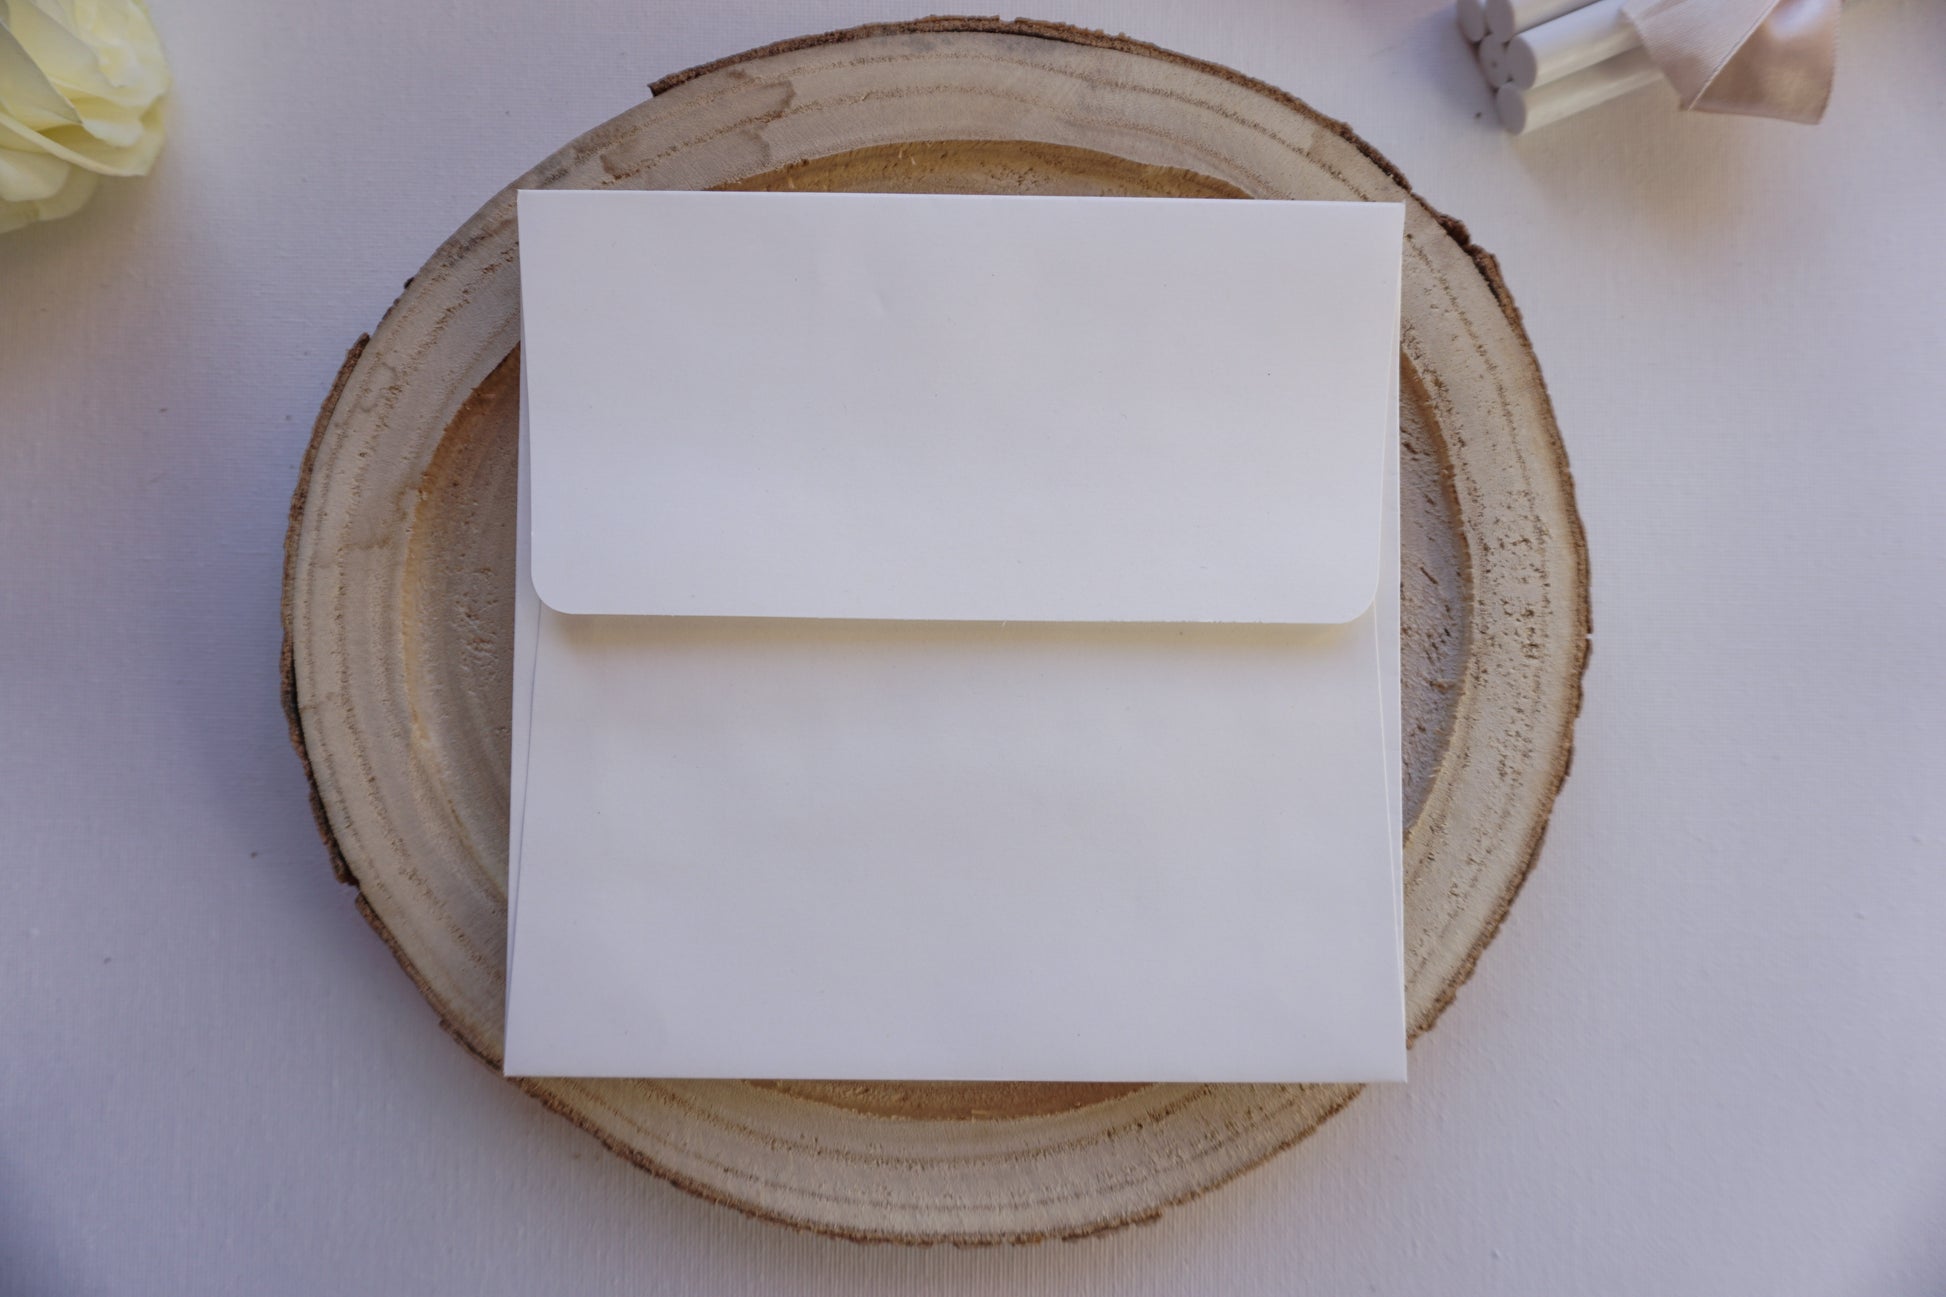 Tört fehér díszboríték - 16 x 16 cm.-Boríték-16 x 16 cm -boríték, fehér boríték - plicuri colorate - plicuri speciale -Erdélyi Esküvői Meghívók